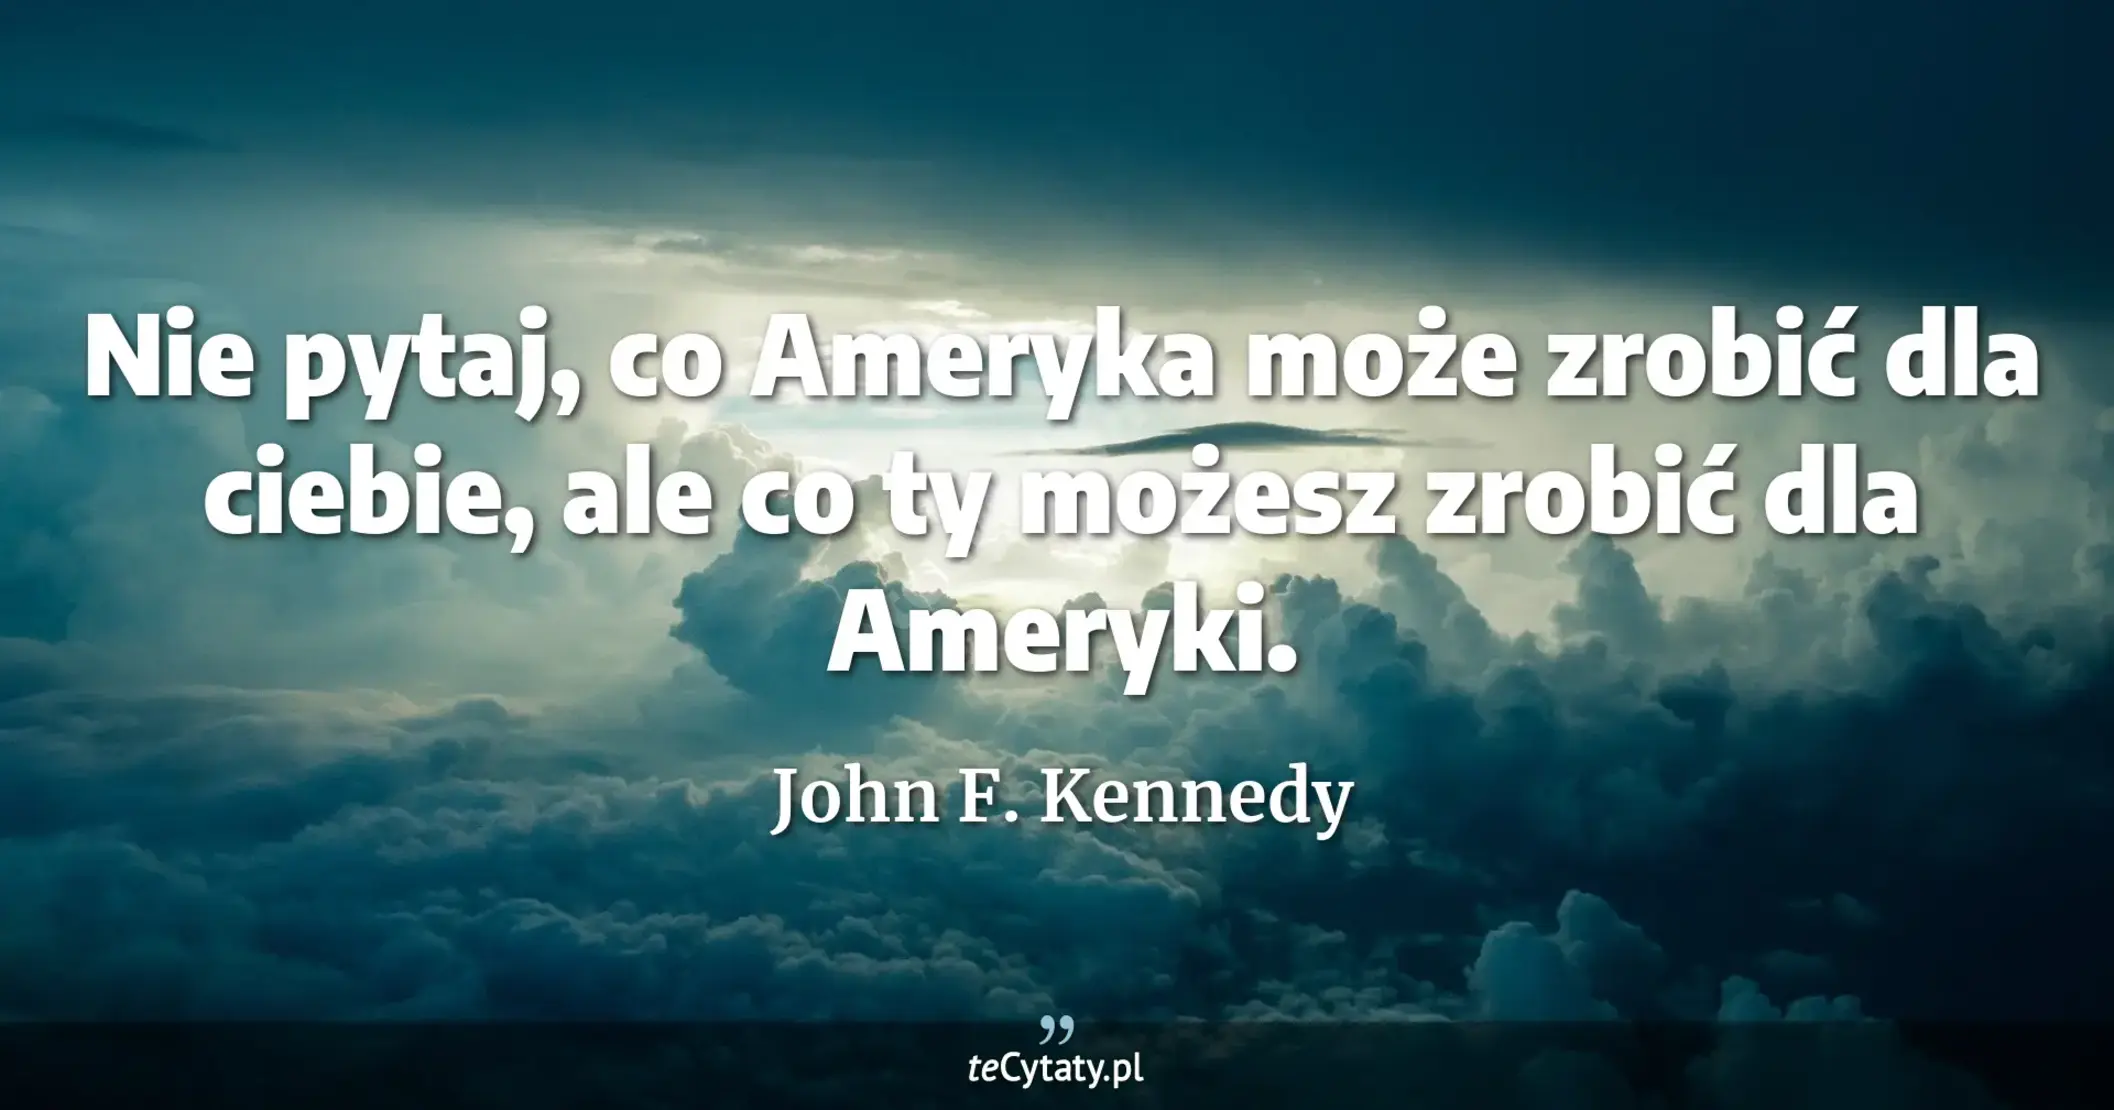 Nie pytaj, co Ameryka może zrobić dla ciebie, ale co ty możesz zrobić dla Ameryki. - John F. Kennedy